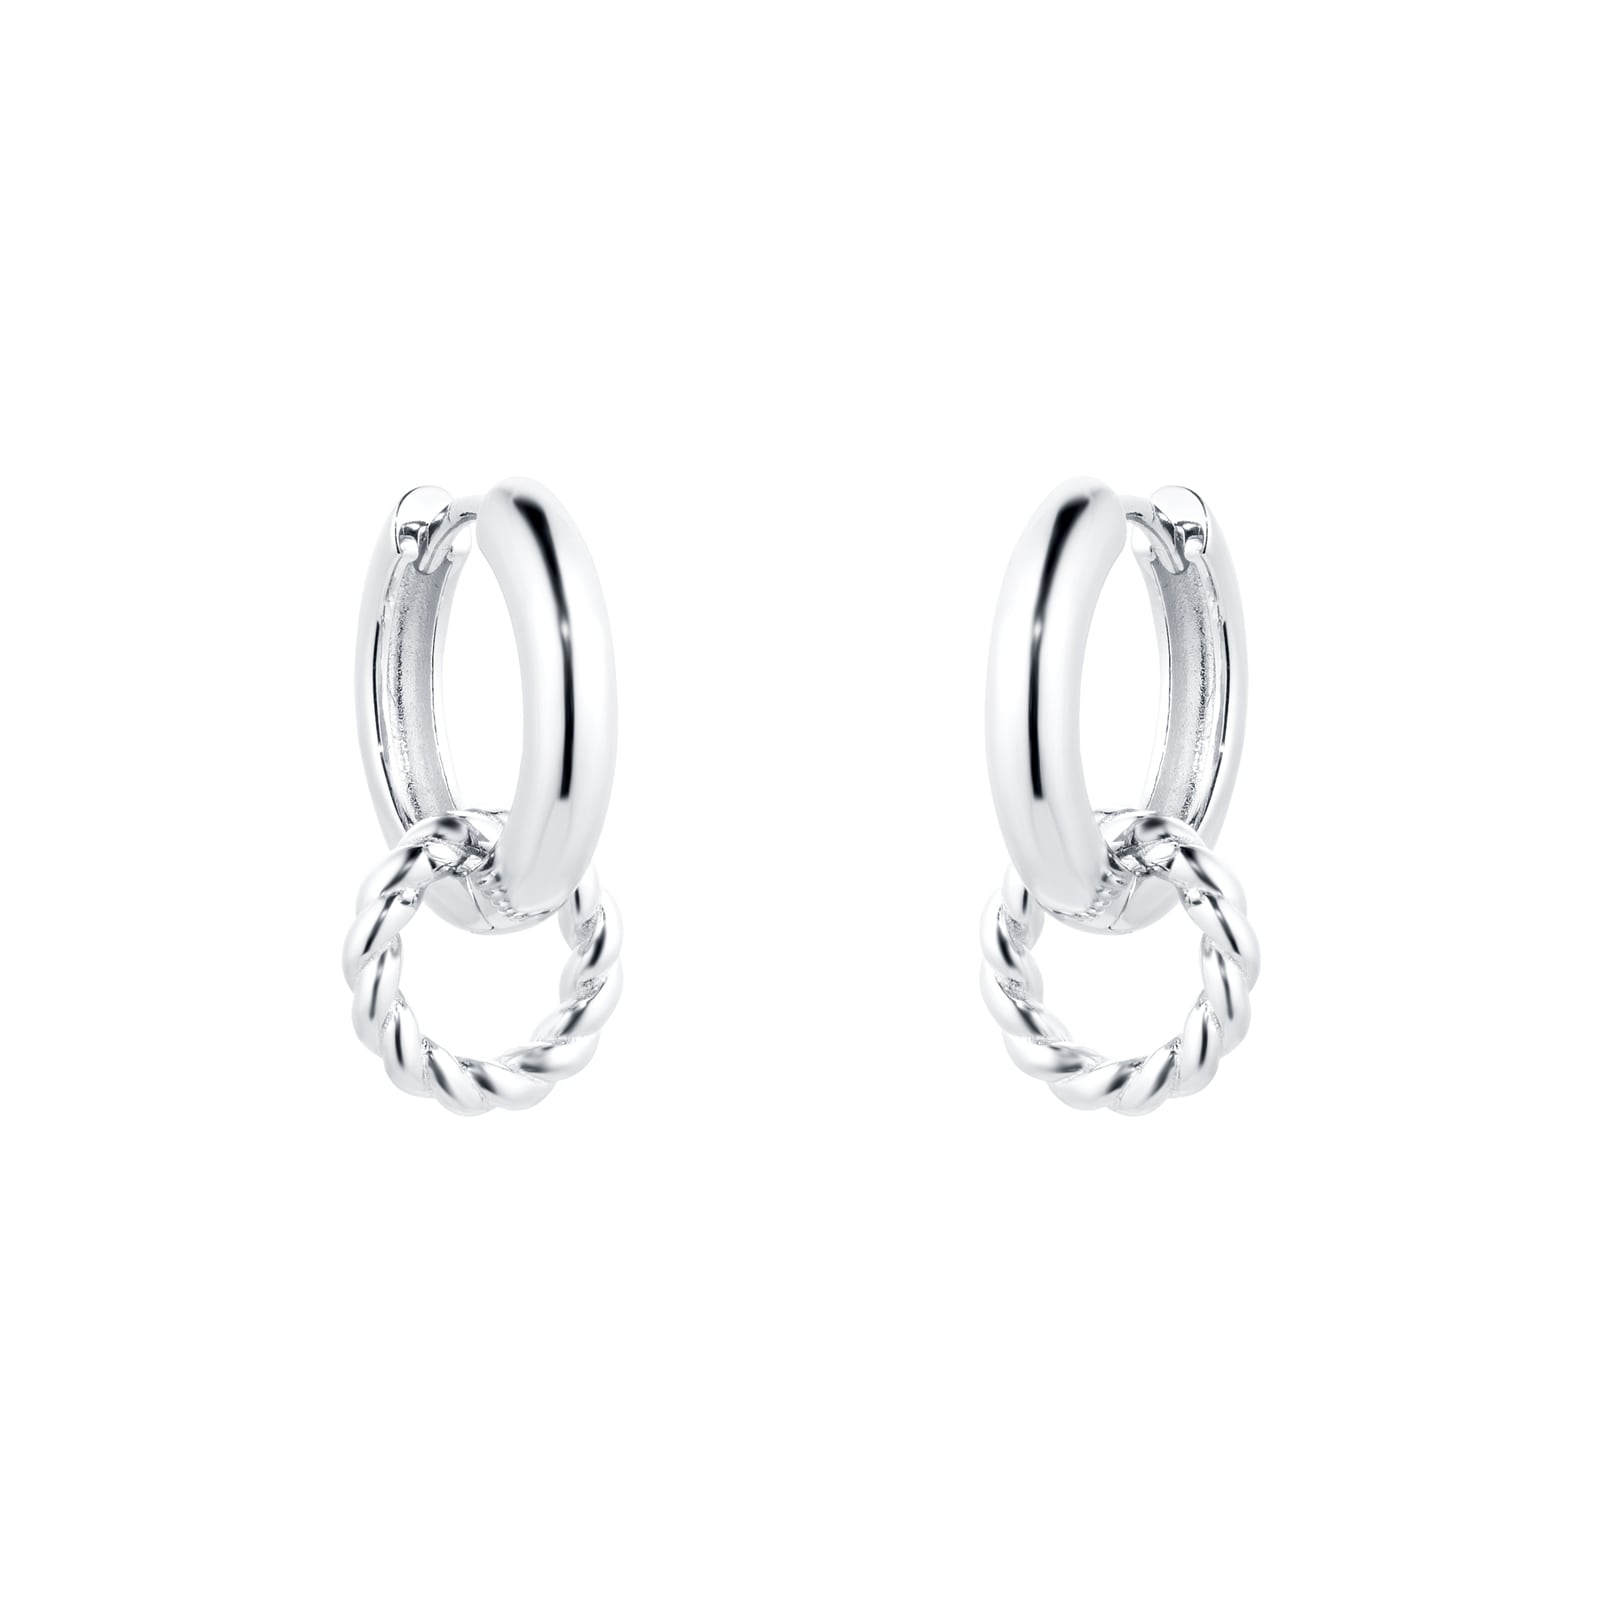 Silver Twisted Charm Hoop Earrings